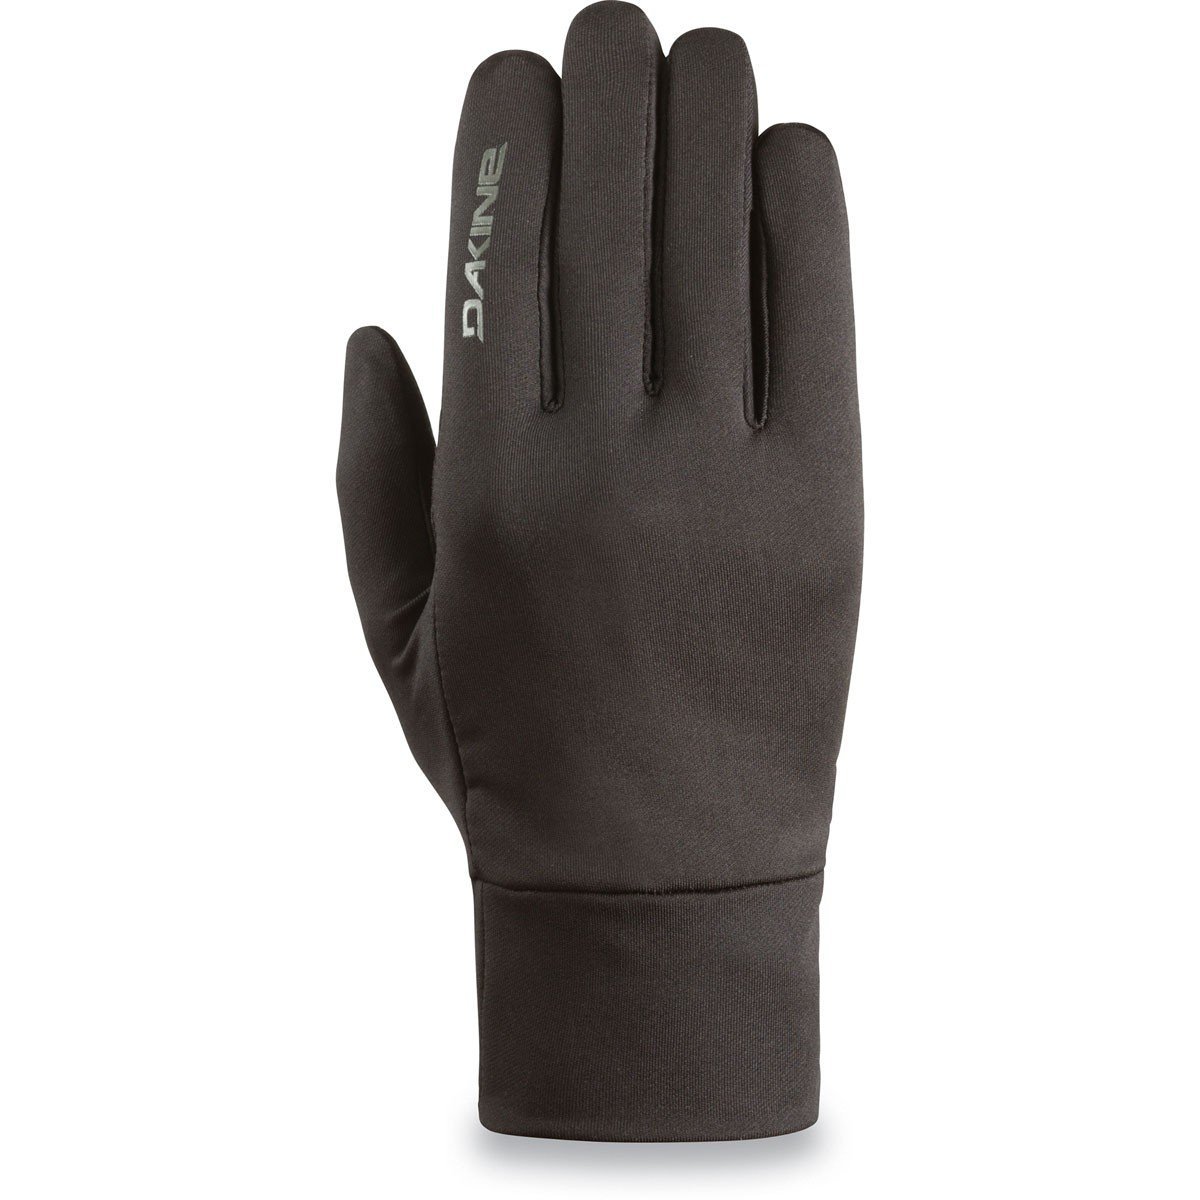 DAKINE Rambler Glove Liner Black WINTER GLOVES - Snowboard Glove Liners Dakine 